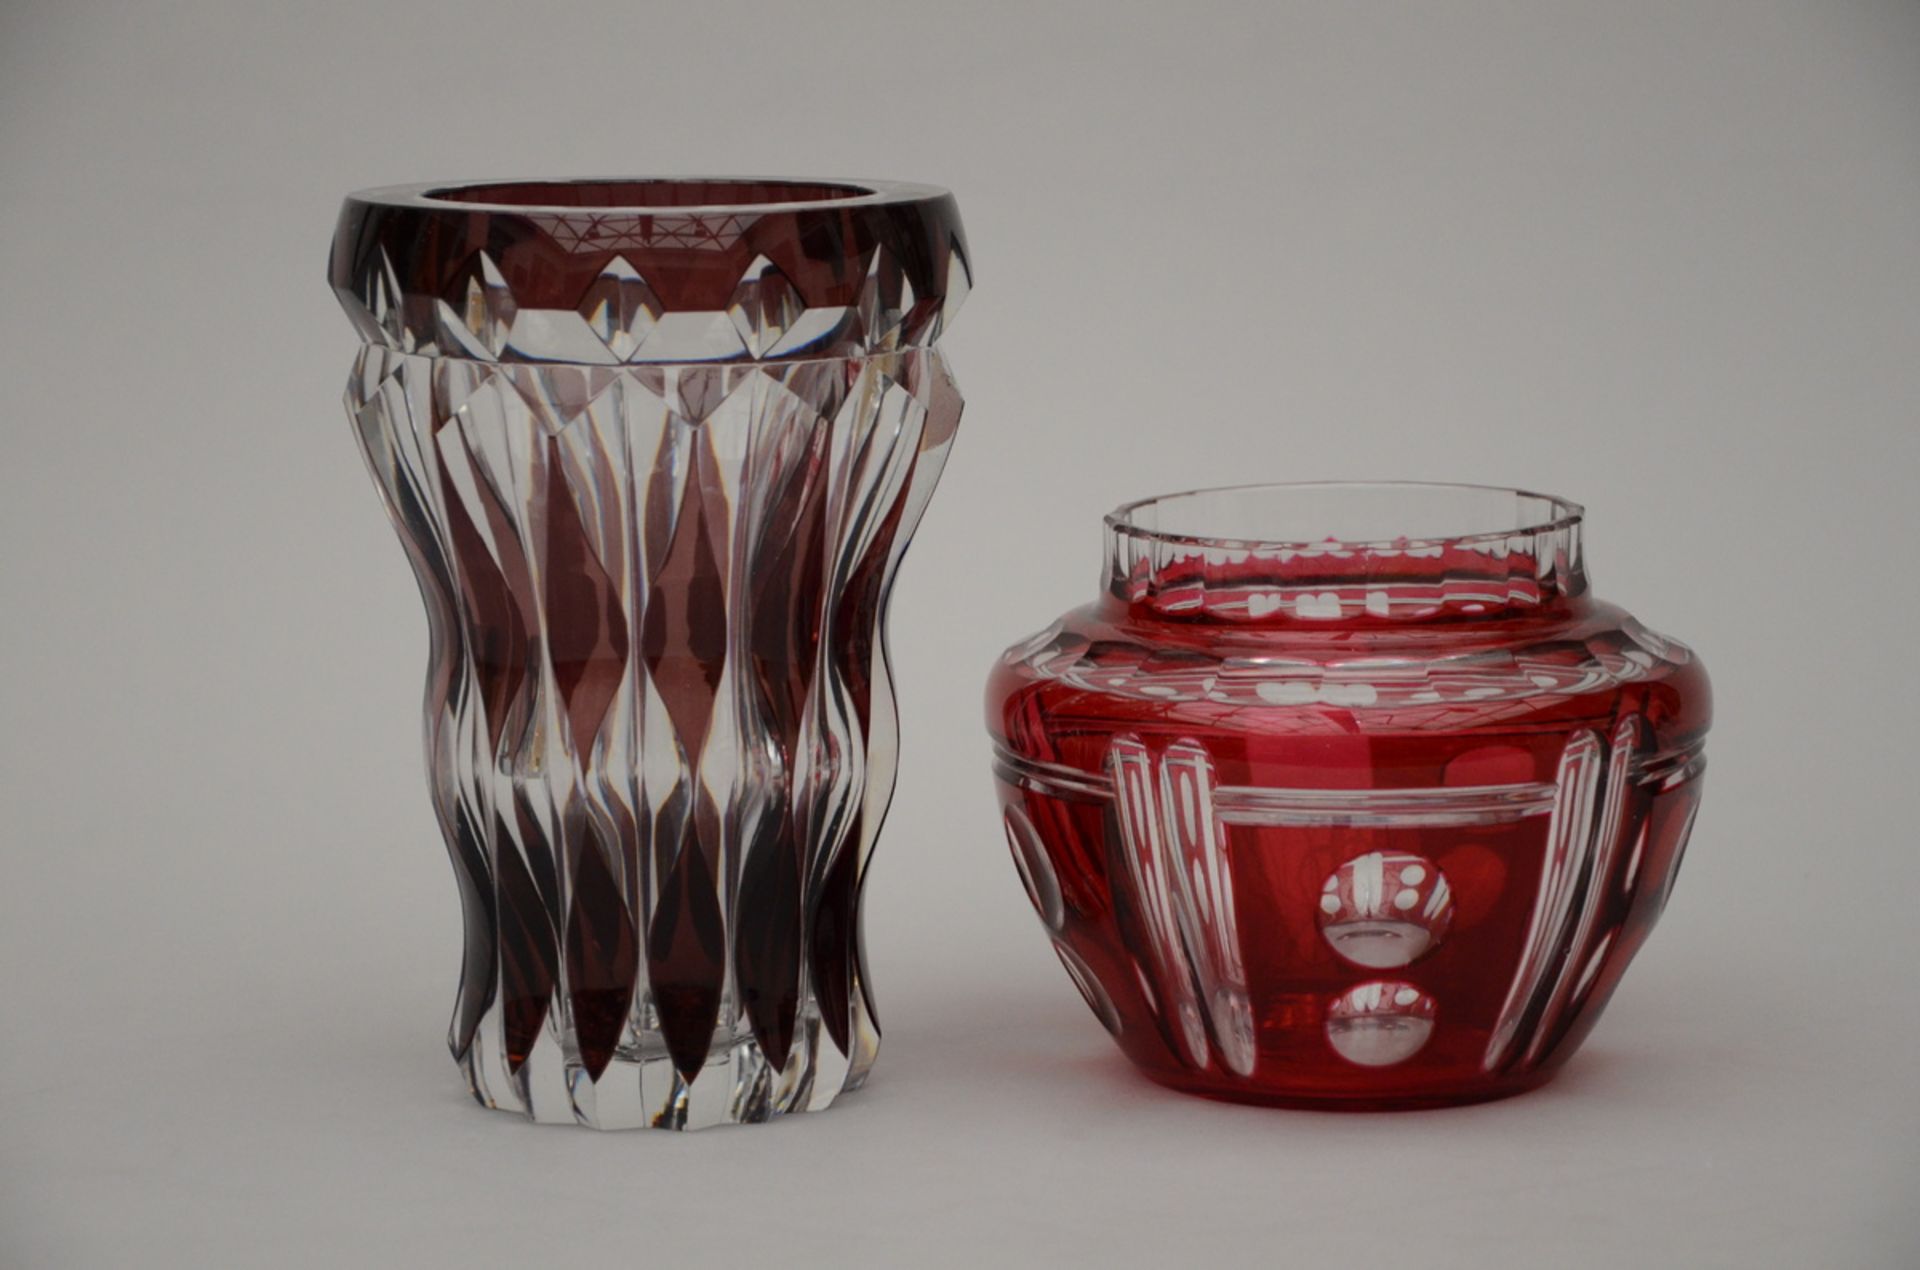 Two crystal Val-Saint-Lambert vases (h23 dia15.5 & h14.5 & dia18cm)